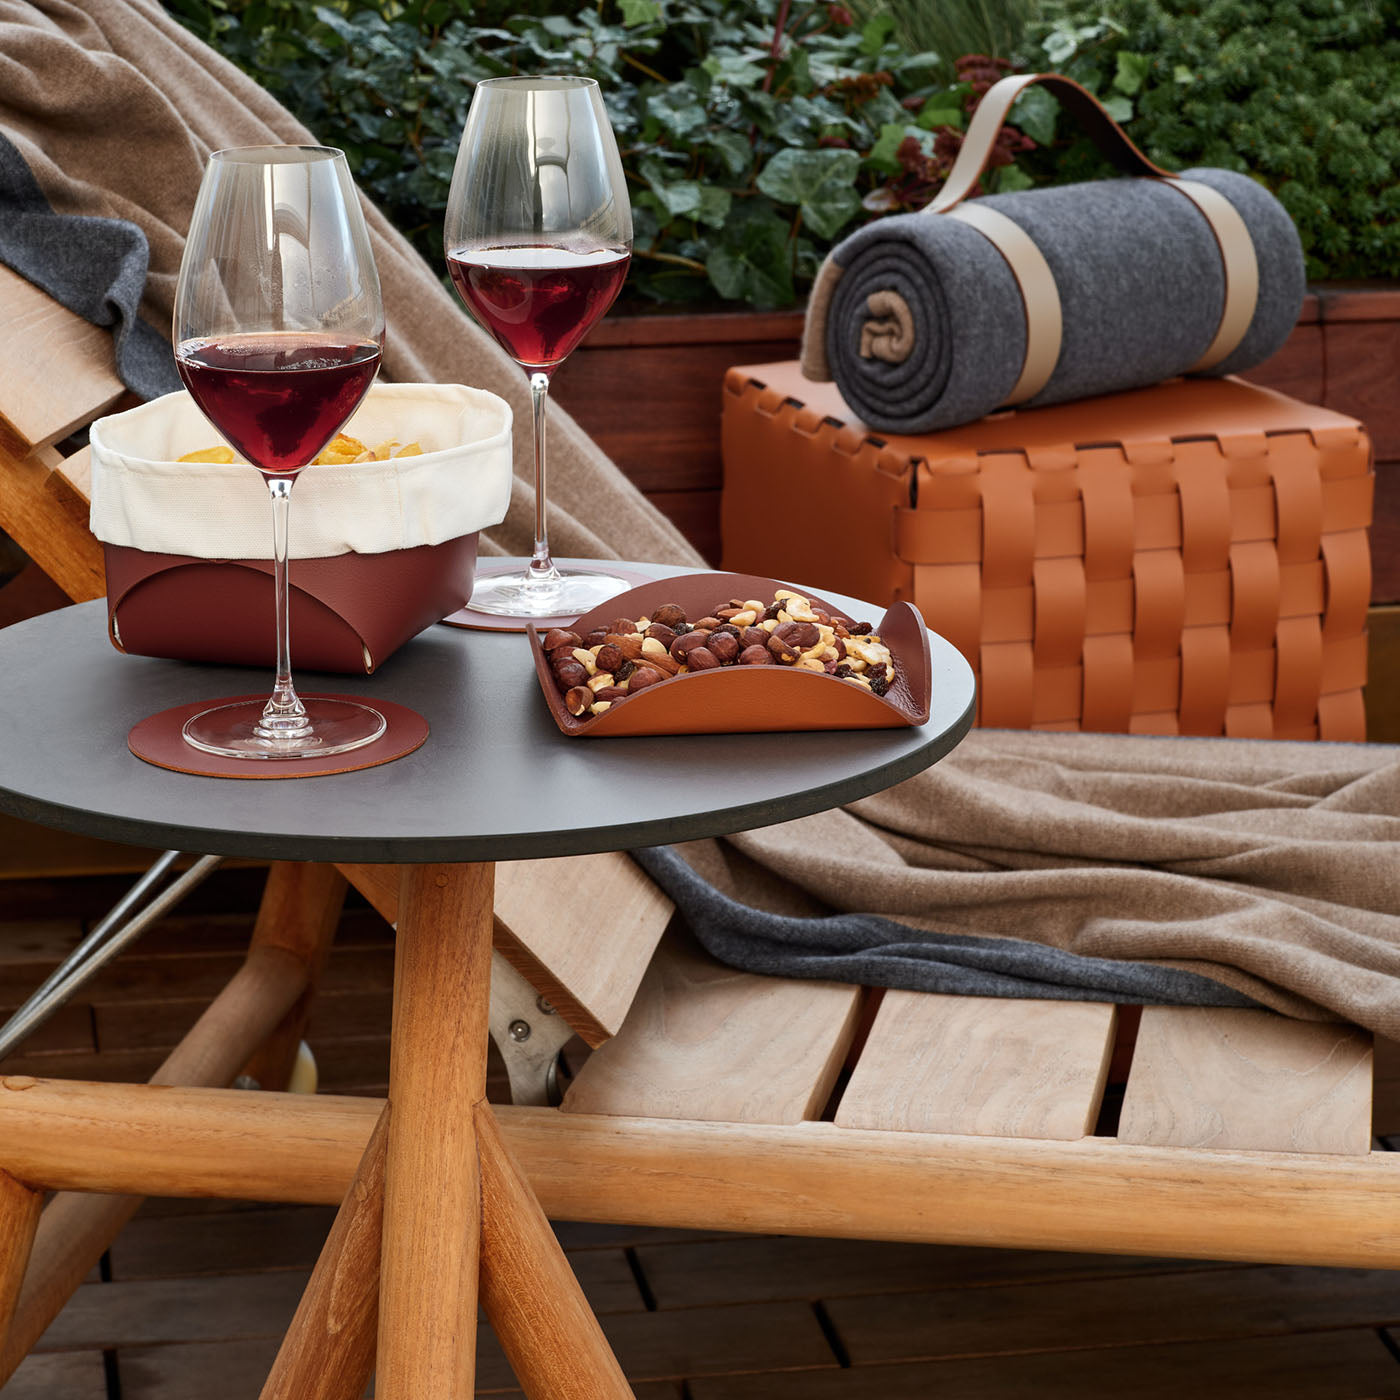 Flora Cognac and Bordeaux Leather Serving Basket - Alternative view 2